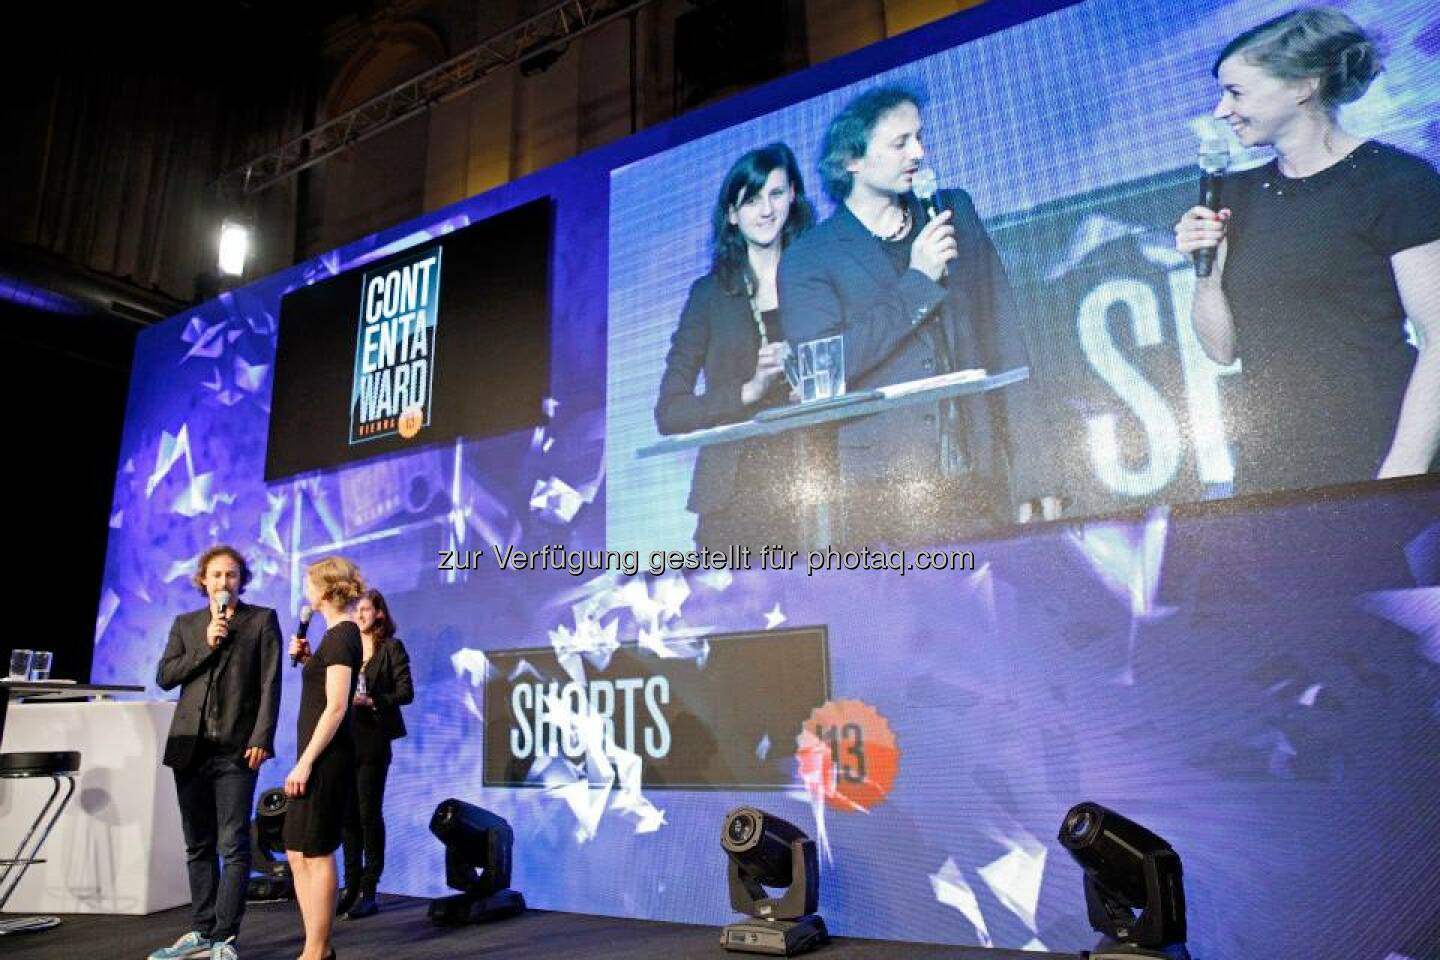 Eva Becker gewann mit  n gschichtn (n arratives) den Content Award für den besten Short